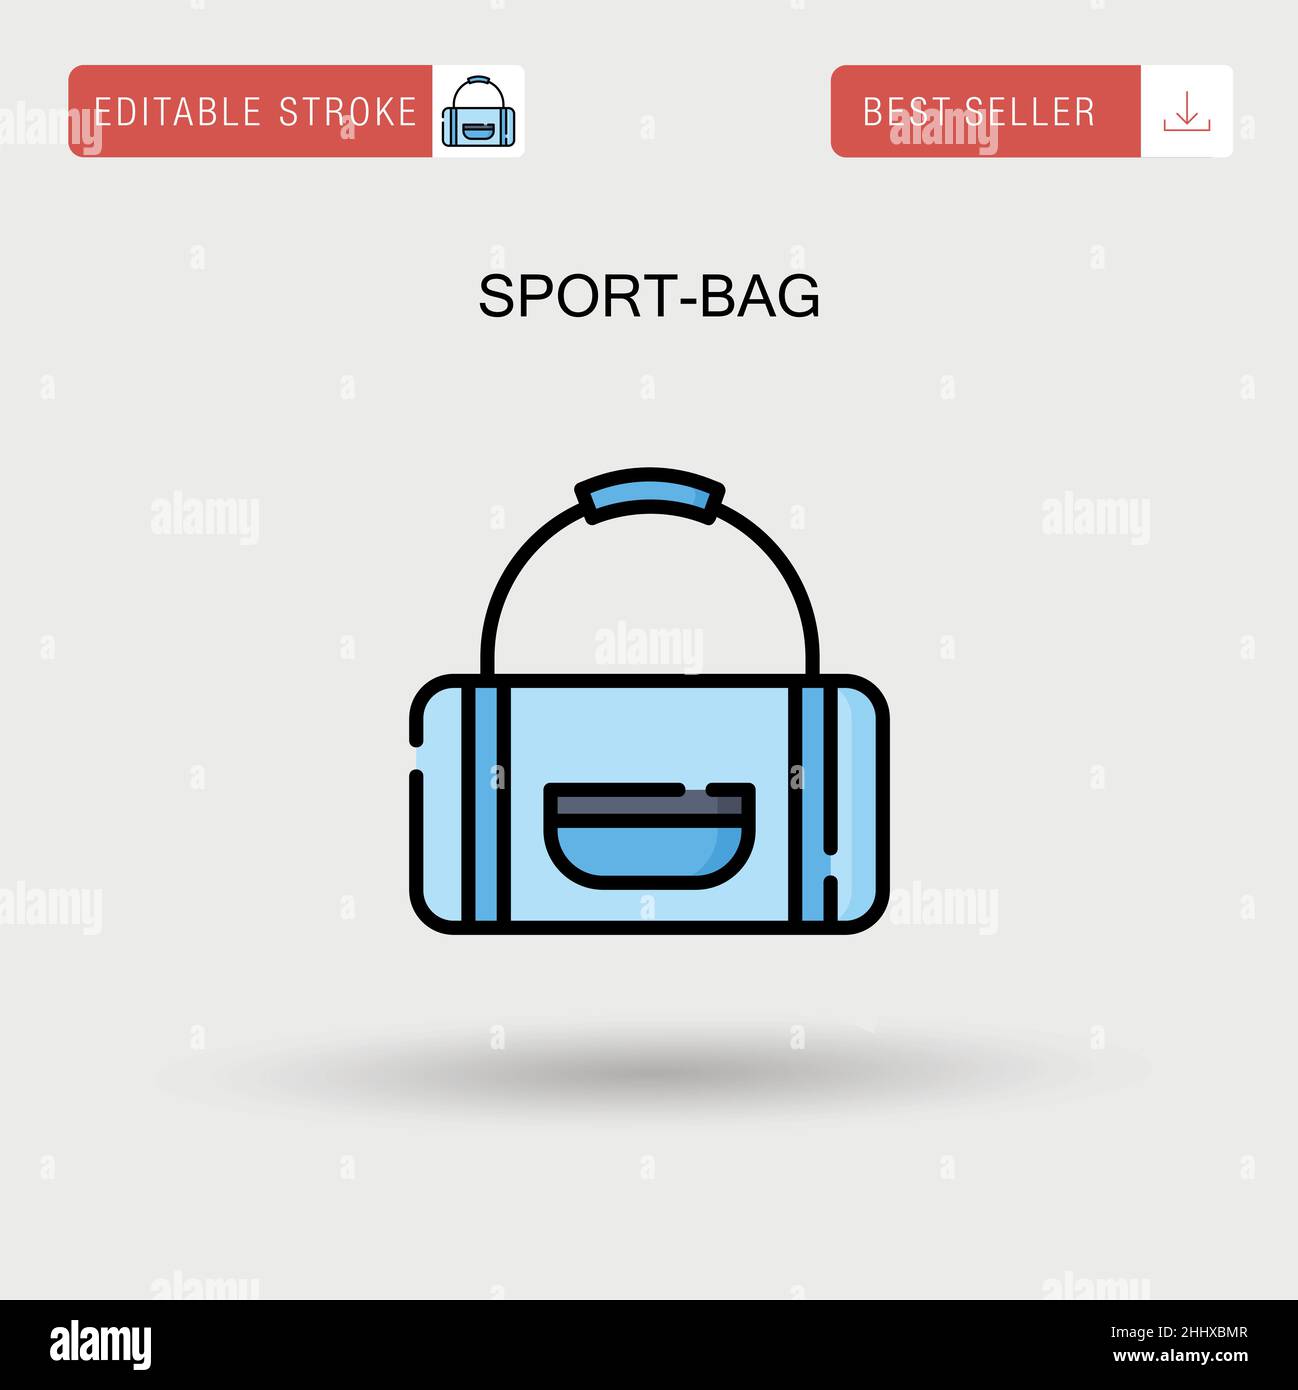 Einfaches Vektorsymbol für Sporttaschen. Stock Vektor